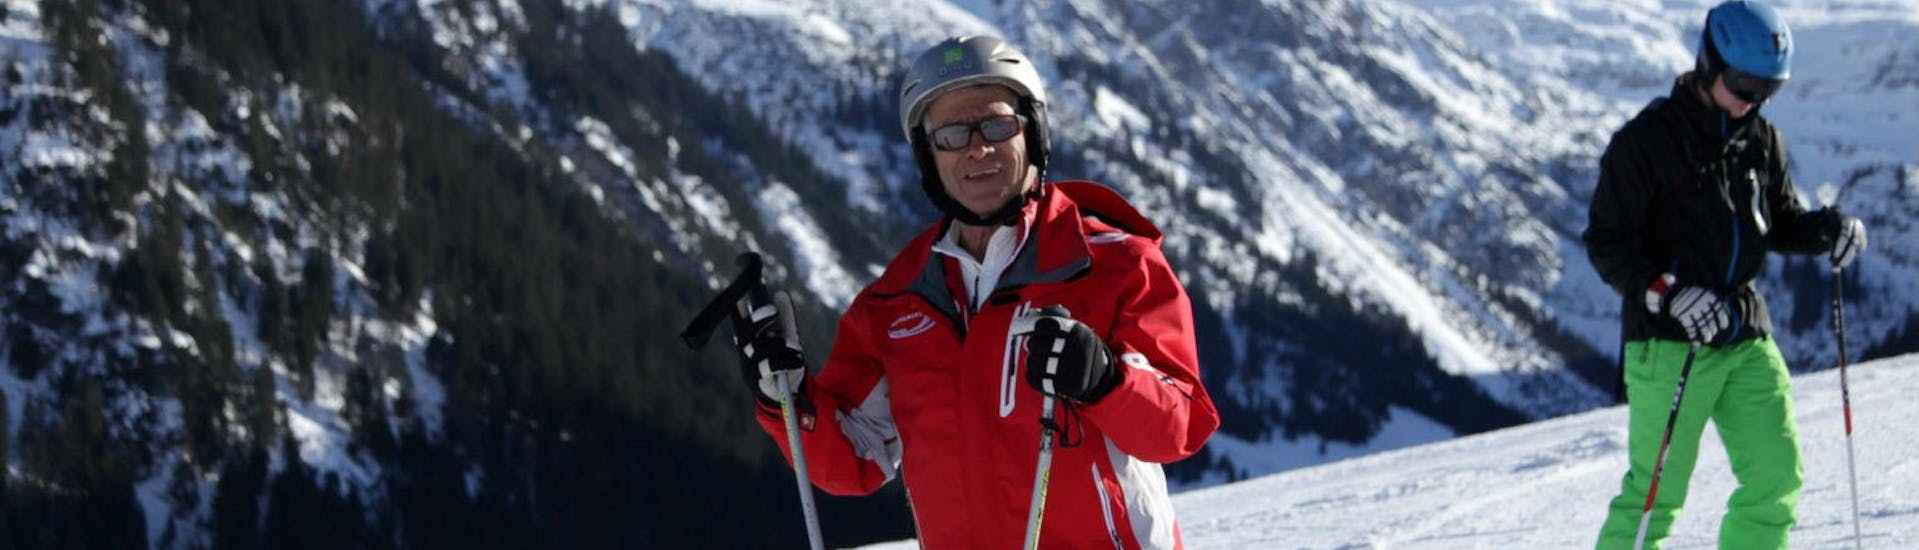 Een skileraar van Skischule Mittelberg op de piste, klaar om volwassen skilessen voor gevorderden te geven.